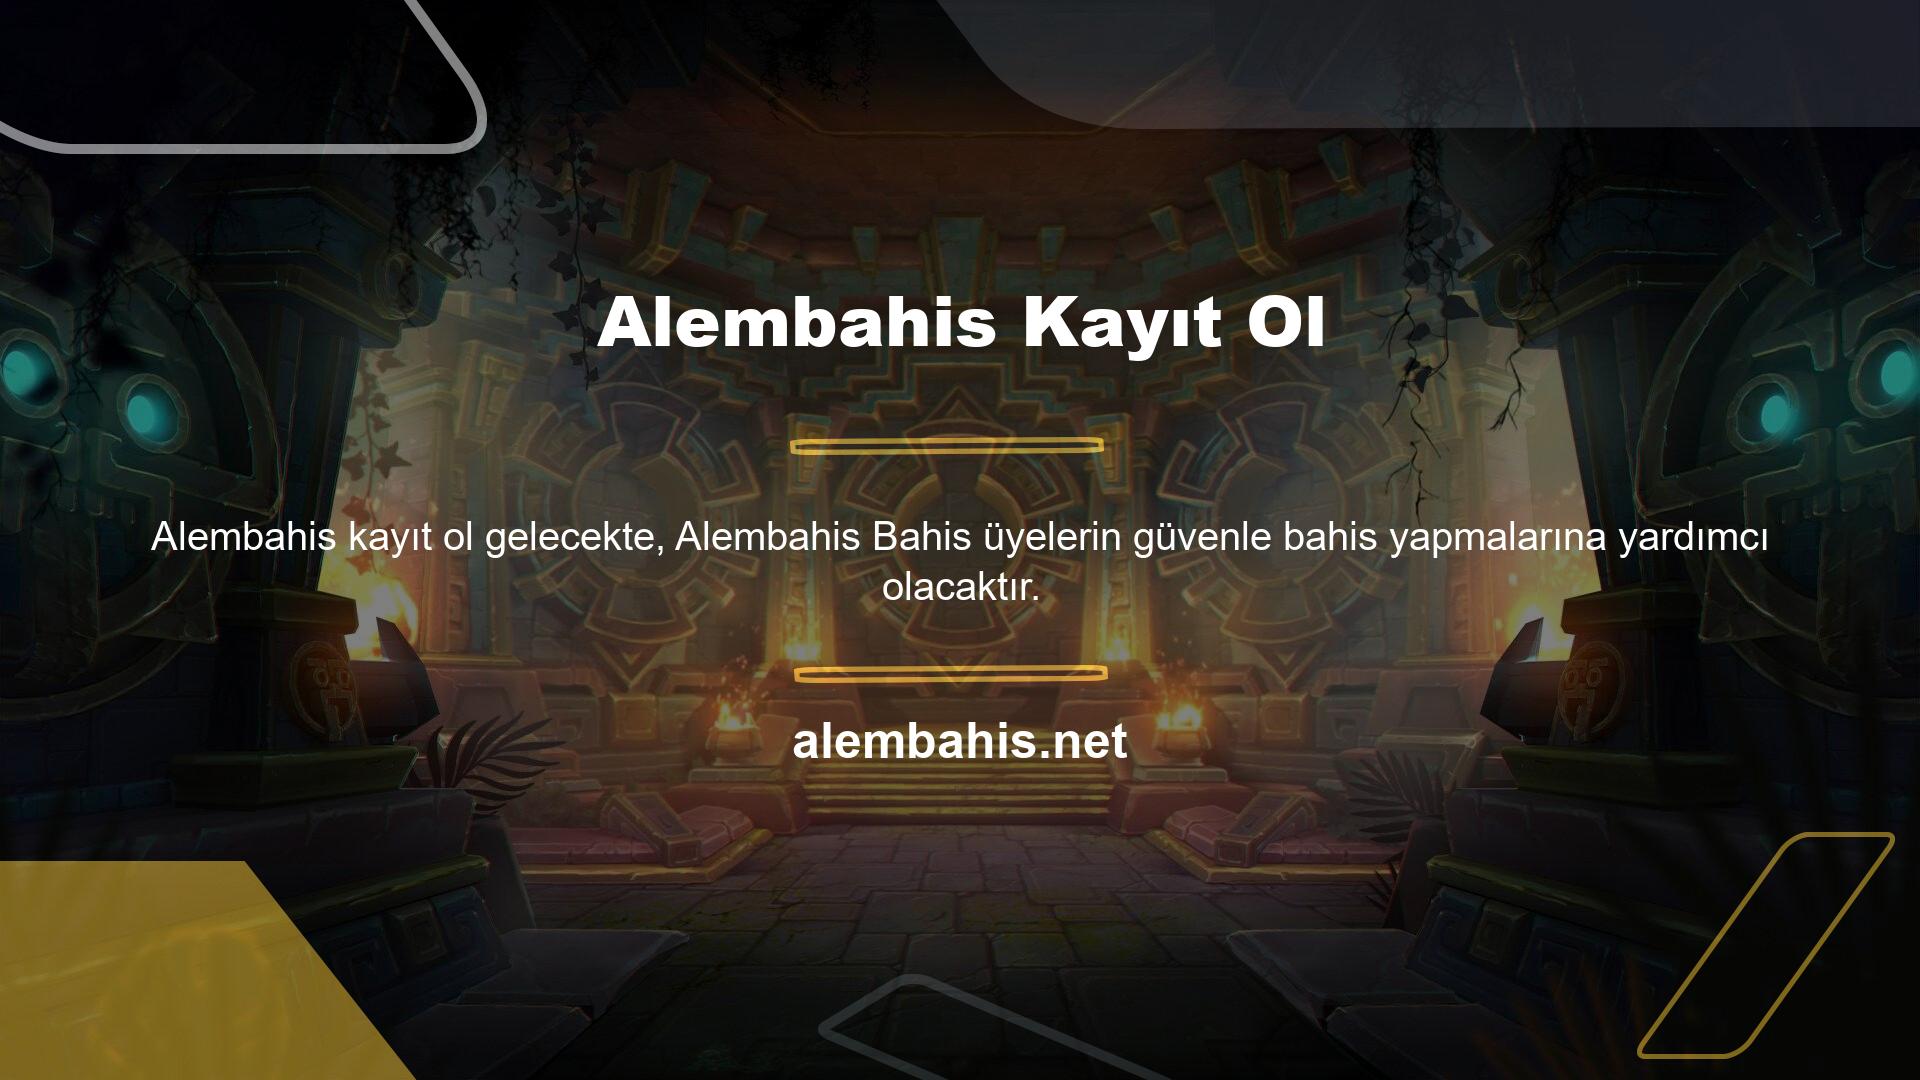 Alembahis kayıt işlemi sırasında, oyuncuların sonuçlarının bir kısmını web sitesine göndermeleri gerekmektedir